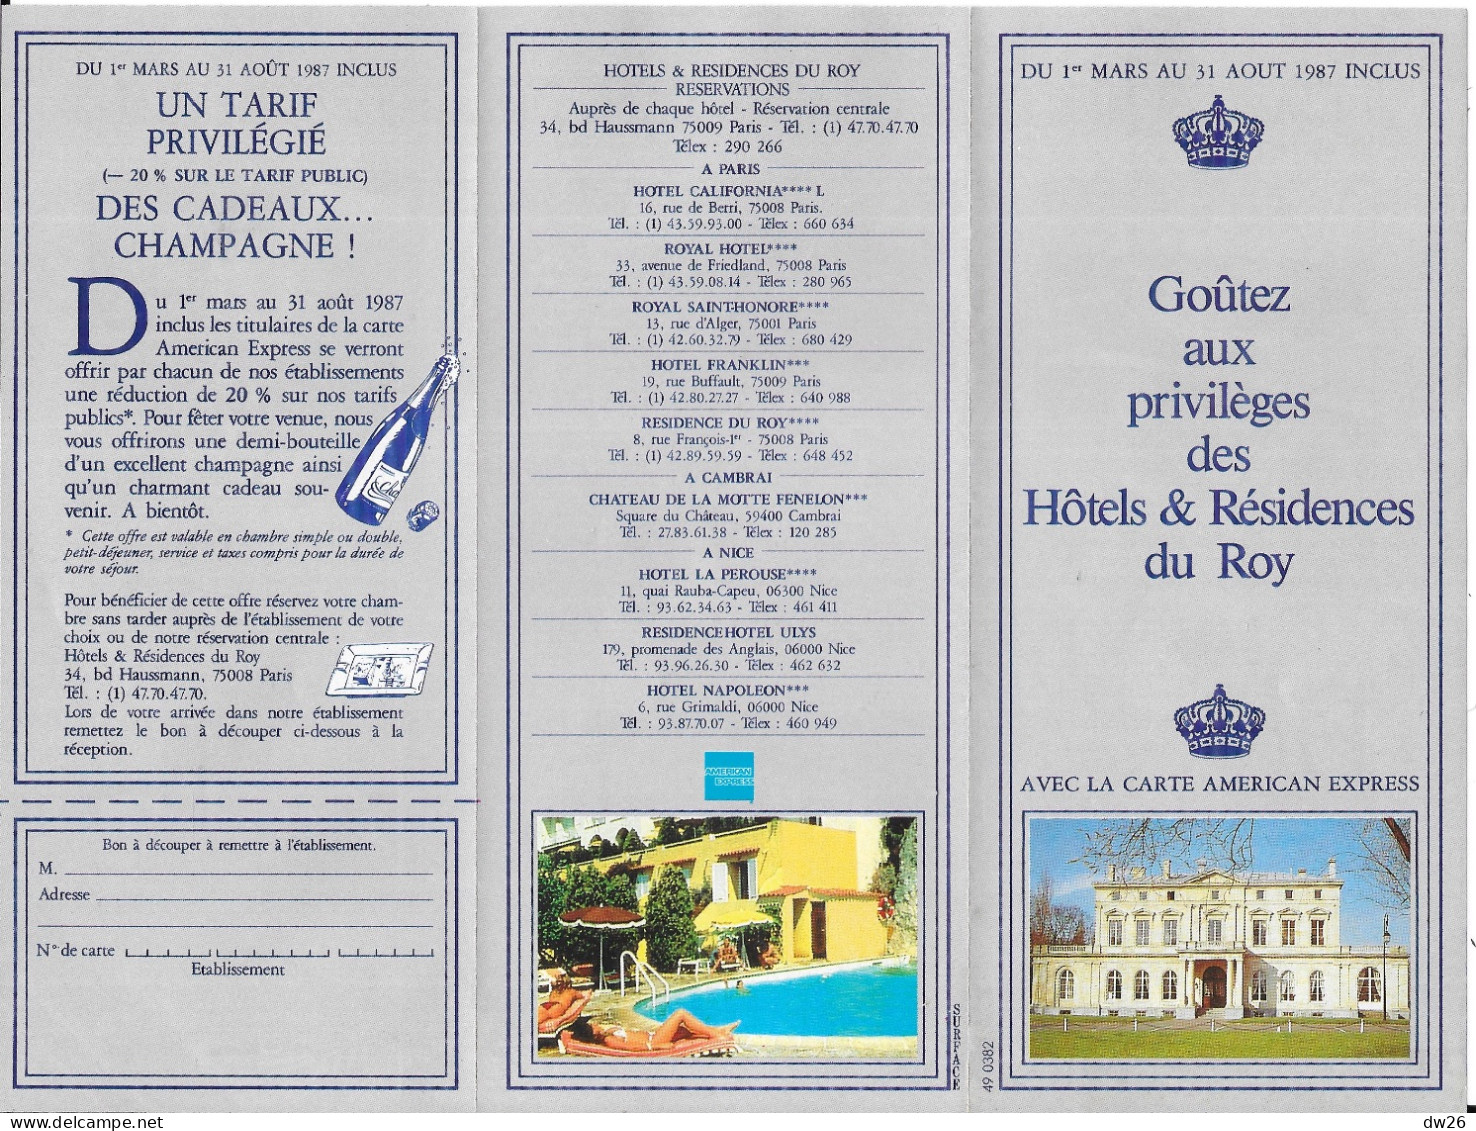 Dépliant Touristique: Goûtez Aux Privilèges Des Hotels & Résidences Du Roy 1987 (Carte American Express) - Cuadernillos Turísticos